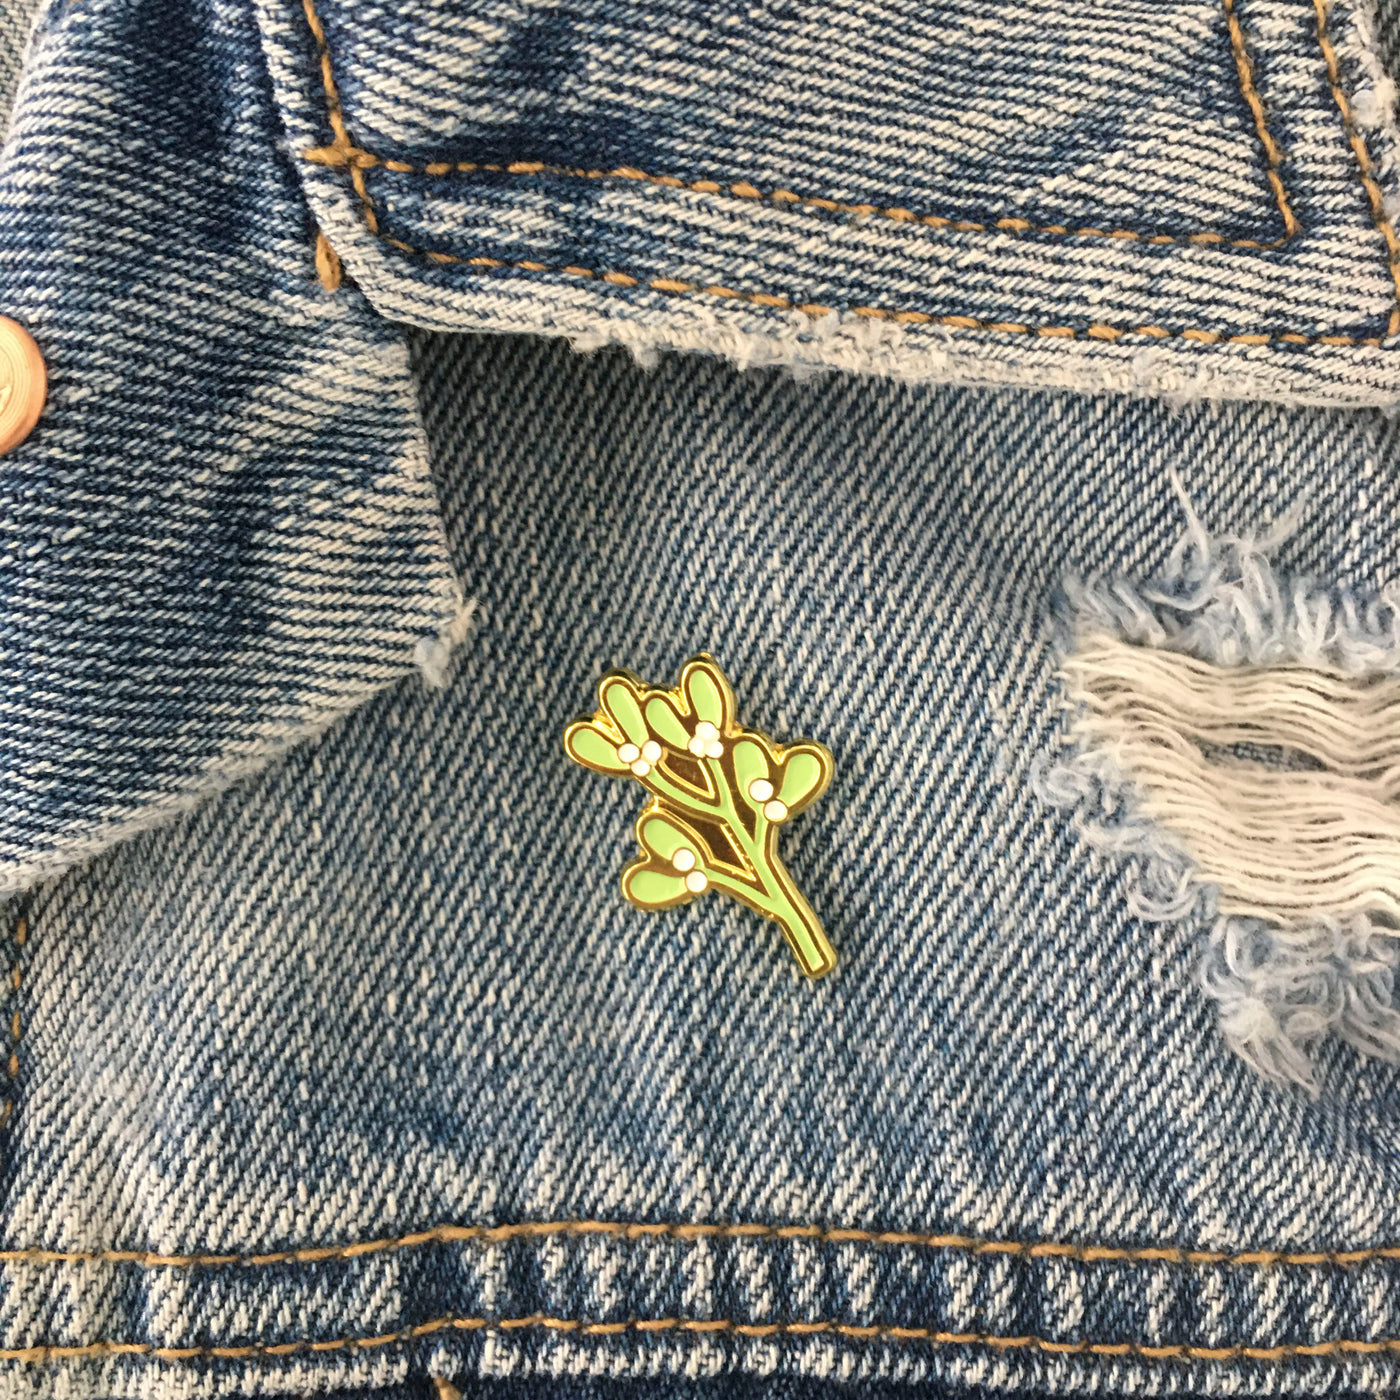 Mistletoe Pin